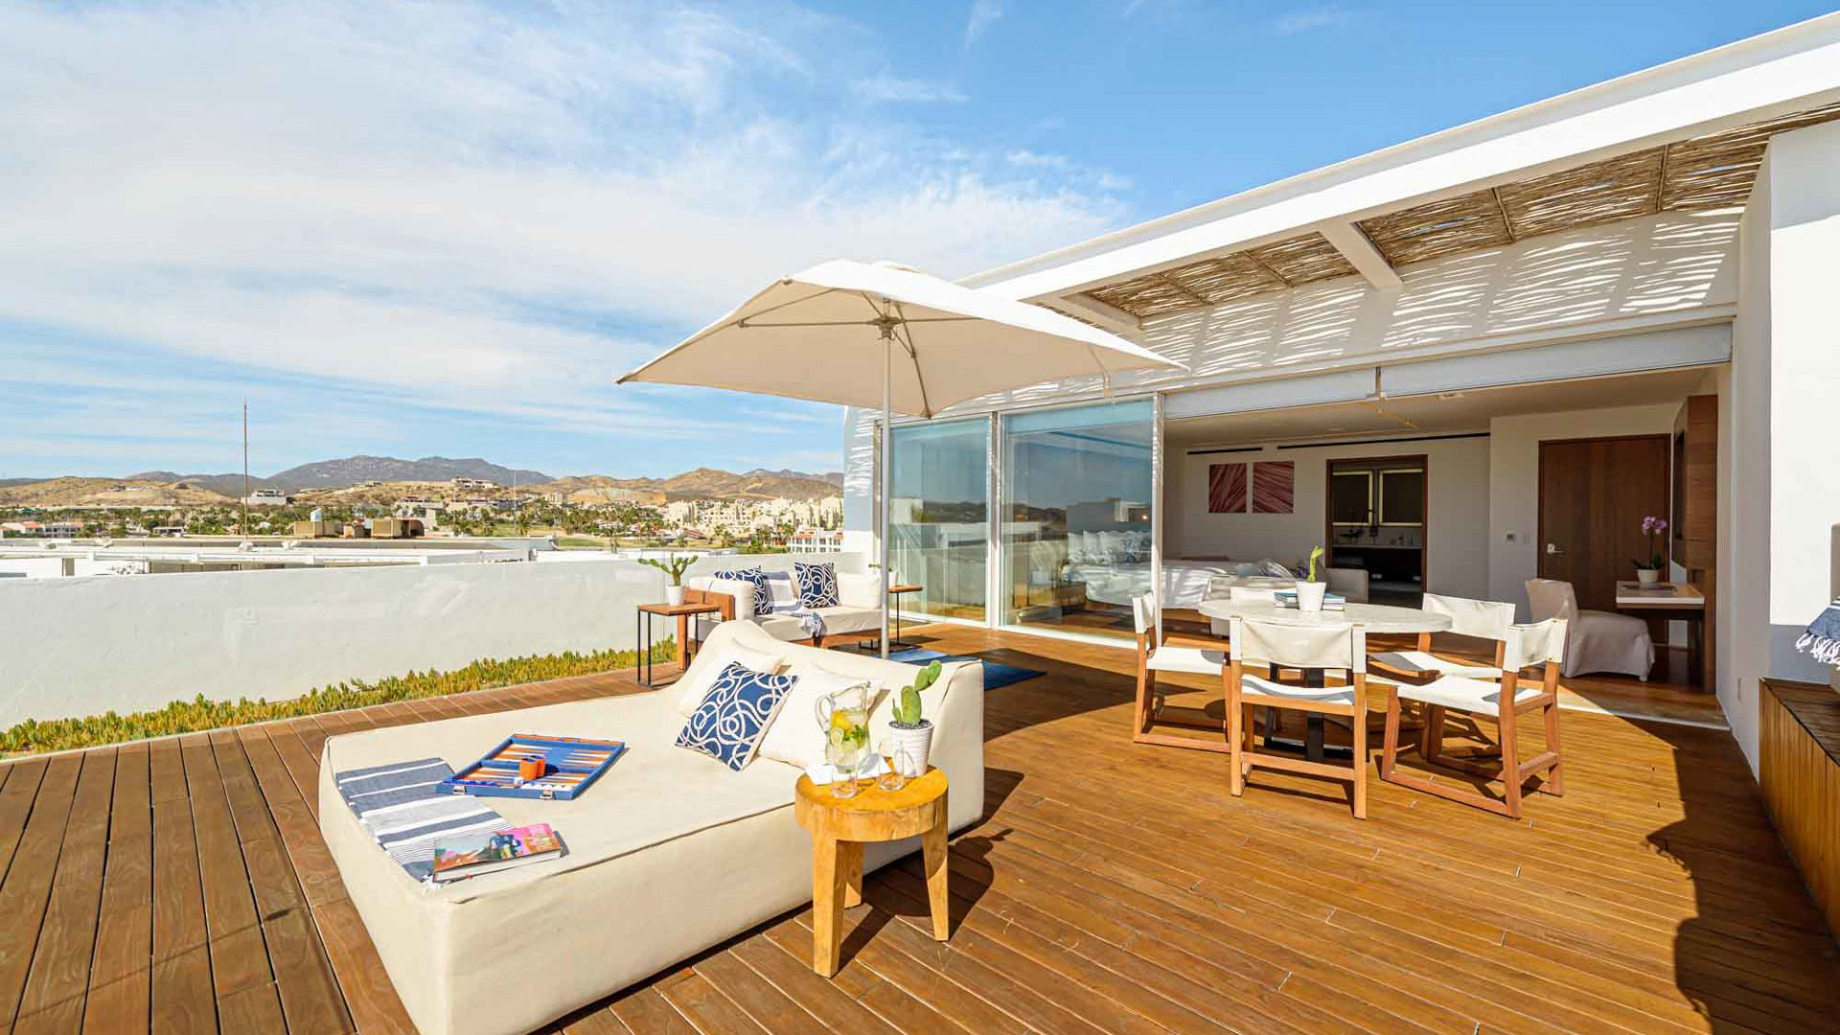 Viceroy Los Cabos Resort - San José del Cabo, Mexico - One Bedroom Penthouse Outdoor Deck